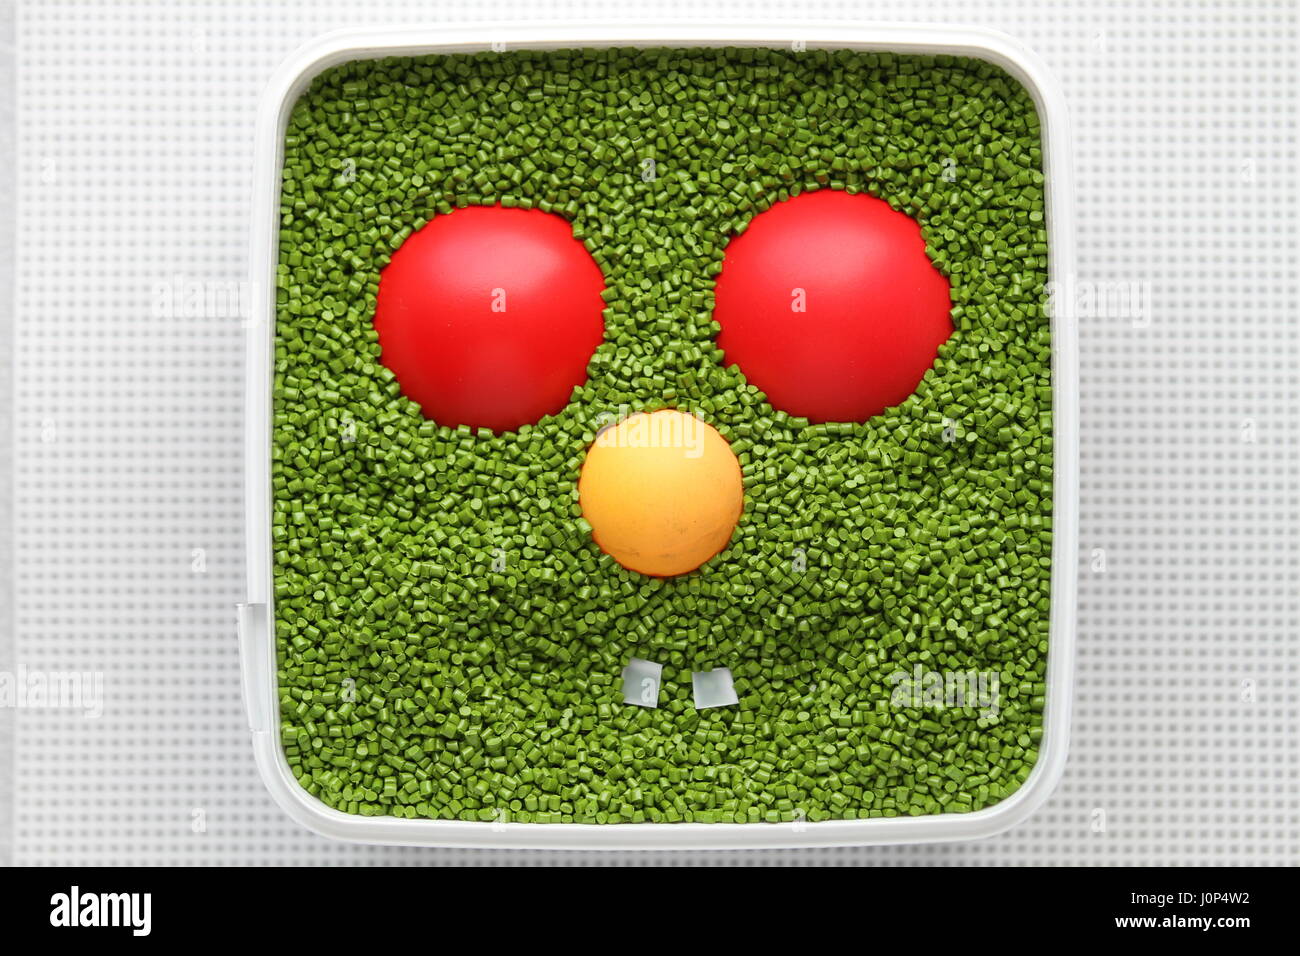 Emoticon verde con ojos rojos, nariz amarilla sobre un fondo blanco. Para el uso de emoticonos en los juegos de ordenador y diseño web. Diseño creativo. Sonrisa. Plástico. Foto de stock